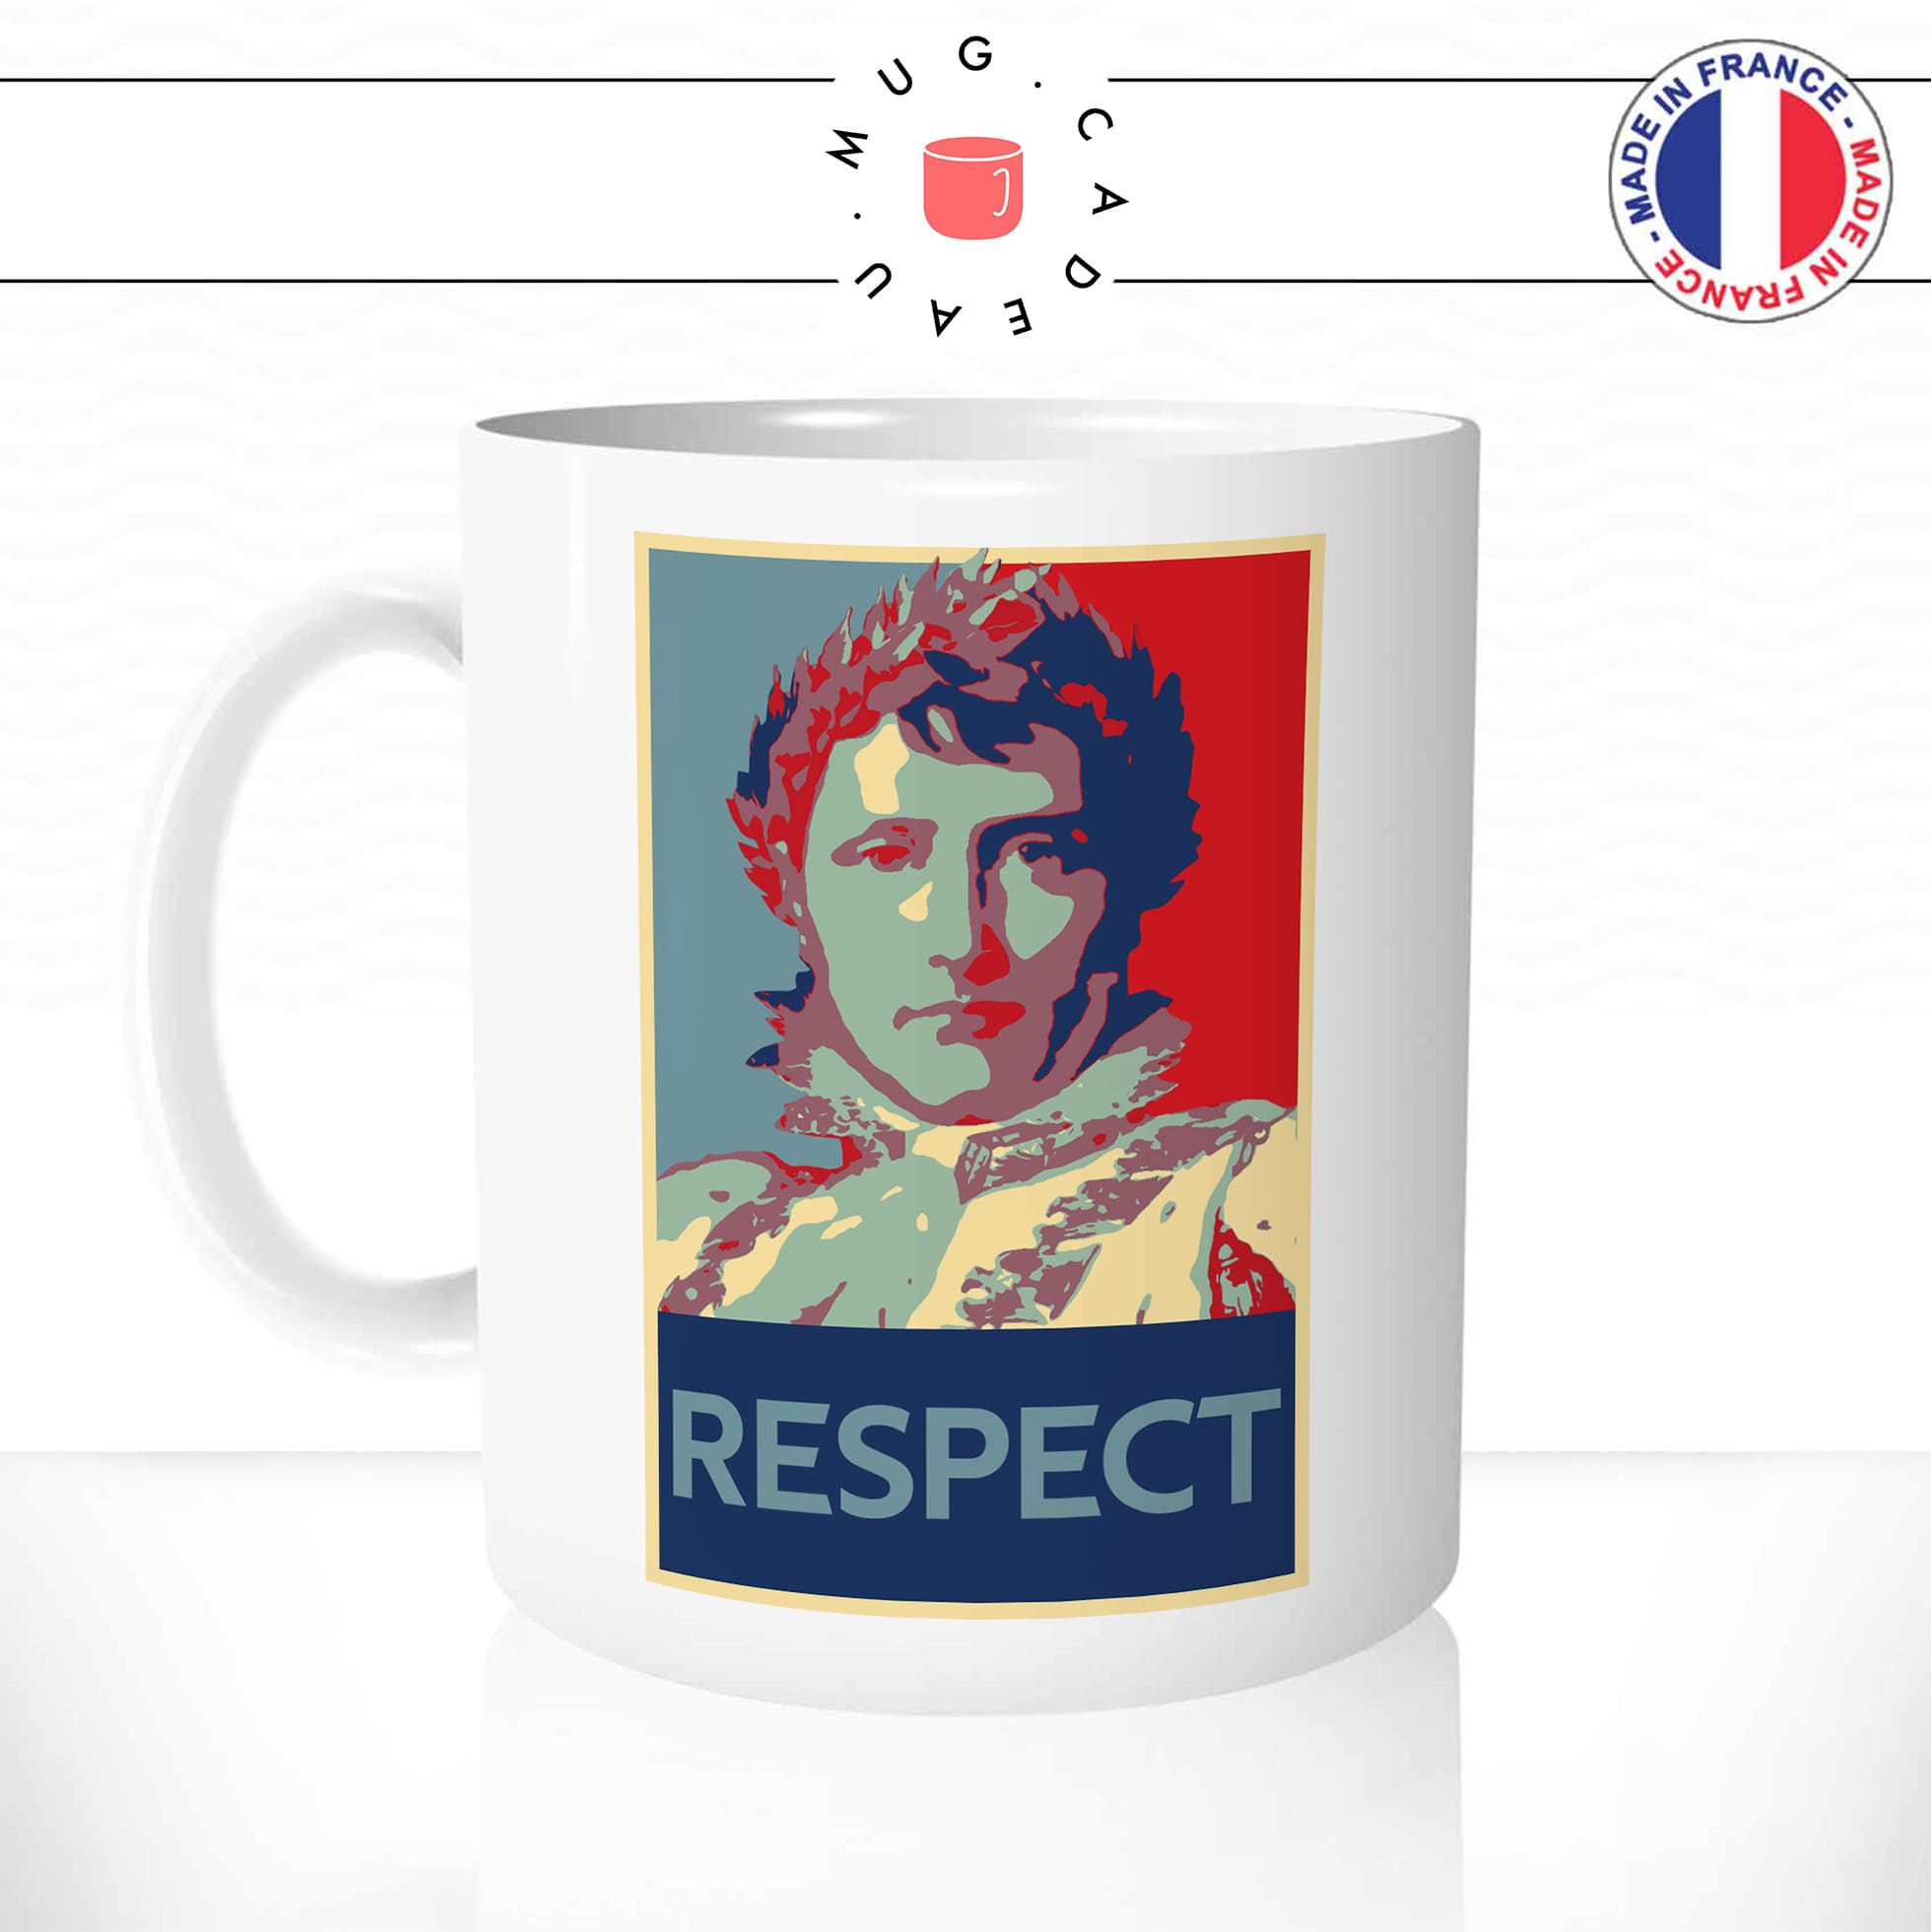 mug-tasse-blanc-simple-napoleon-bonaparte-respect-homme-viril-empereur-francais-affiche-obama-drole-idée-cadeau-originale-café-thé